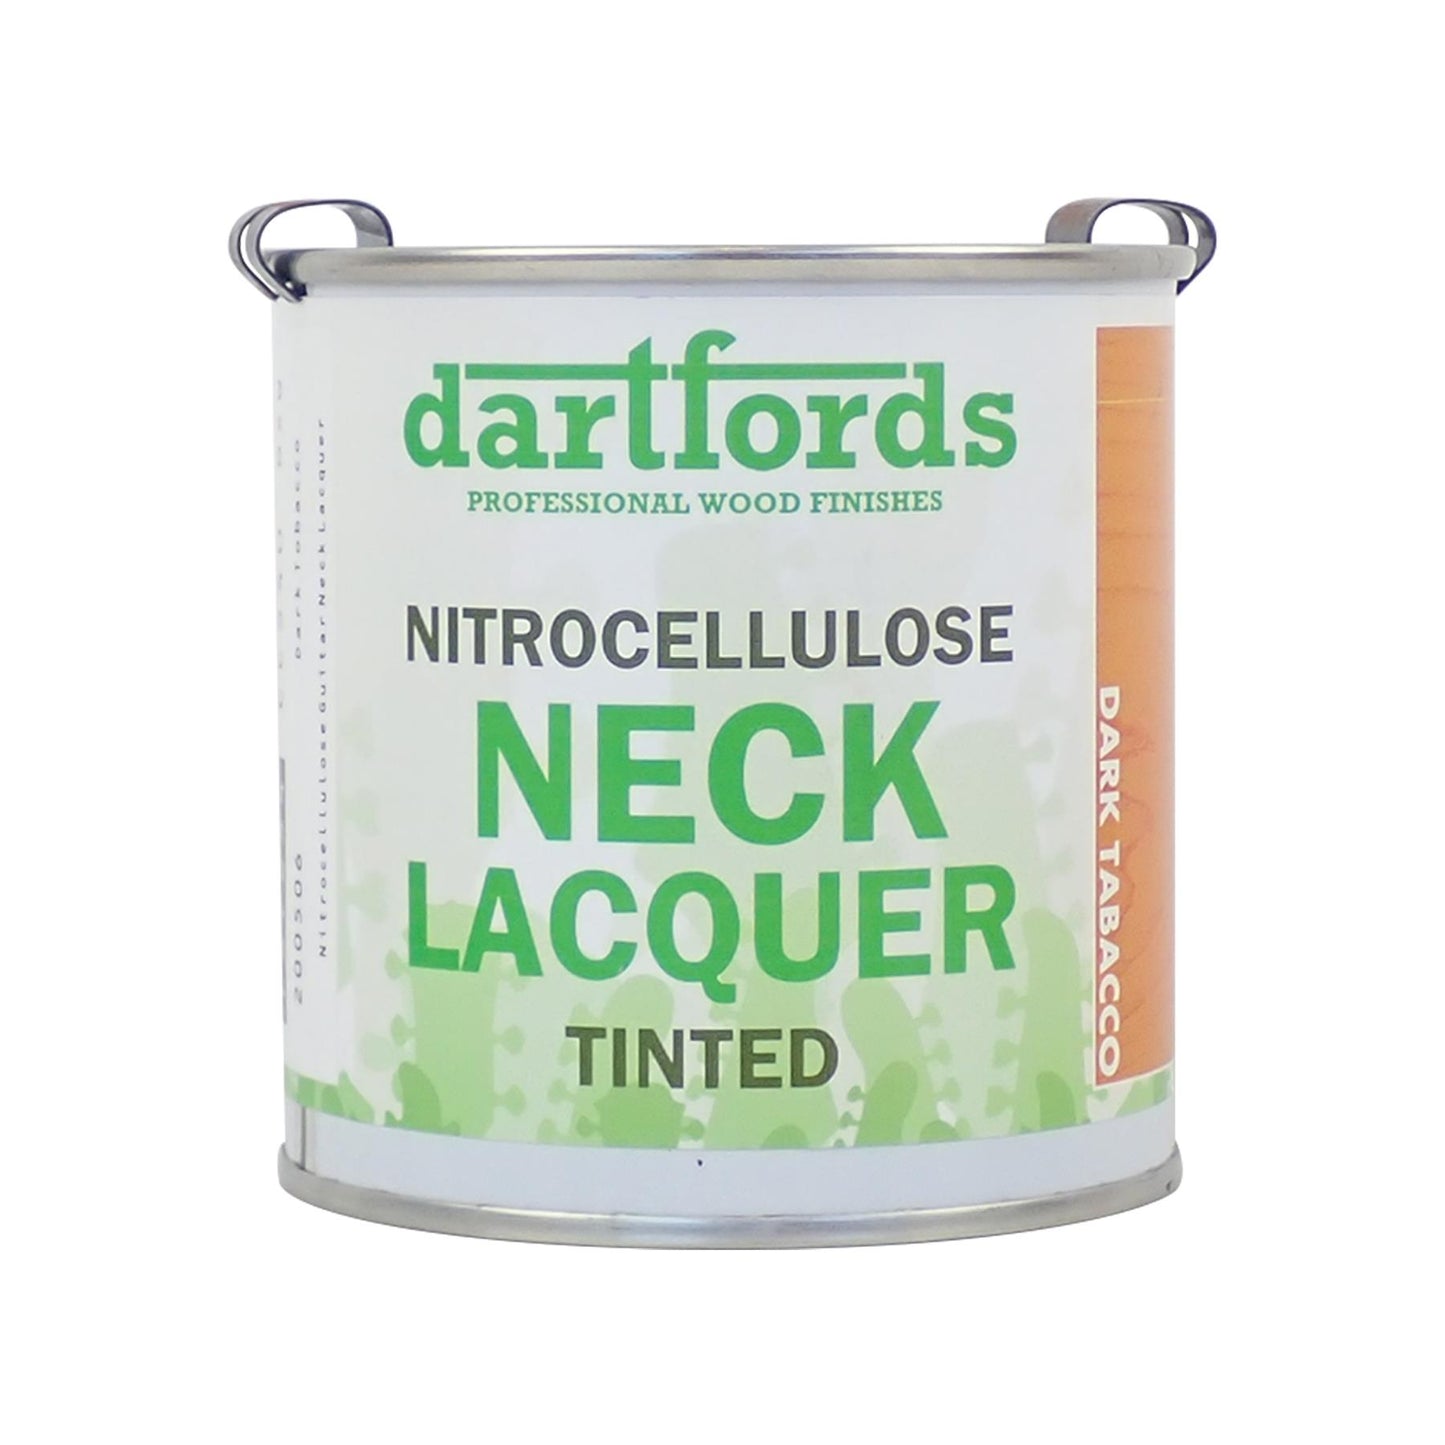 dartfords Dark Tobacco Nitrocellulose Guitar Neck Lacquer - 230ml Tin